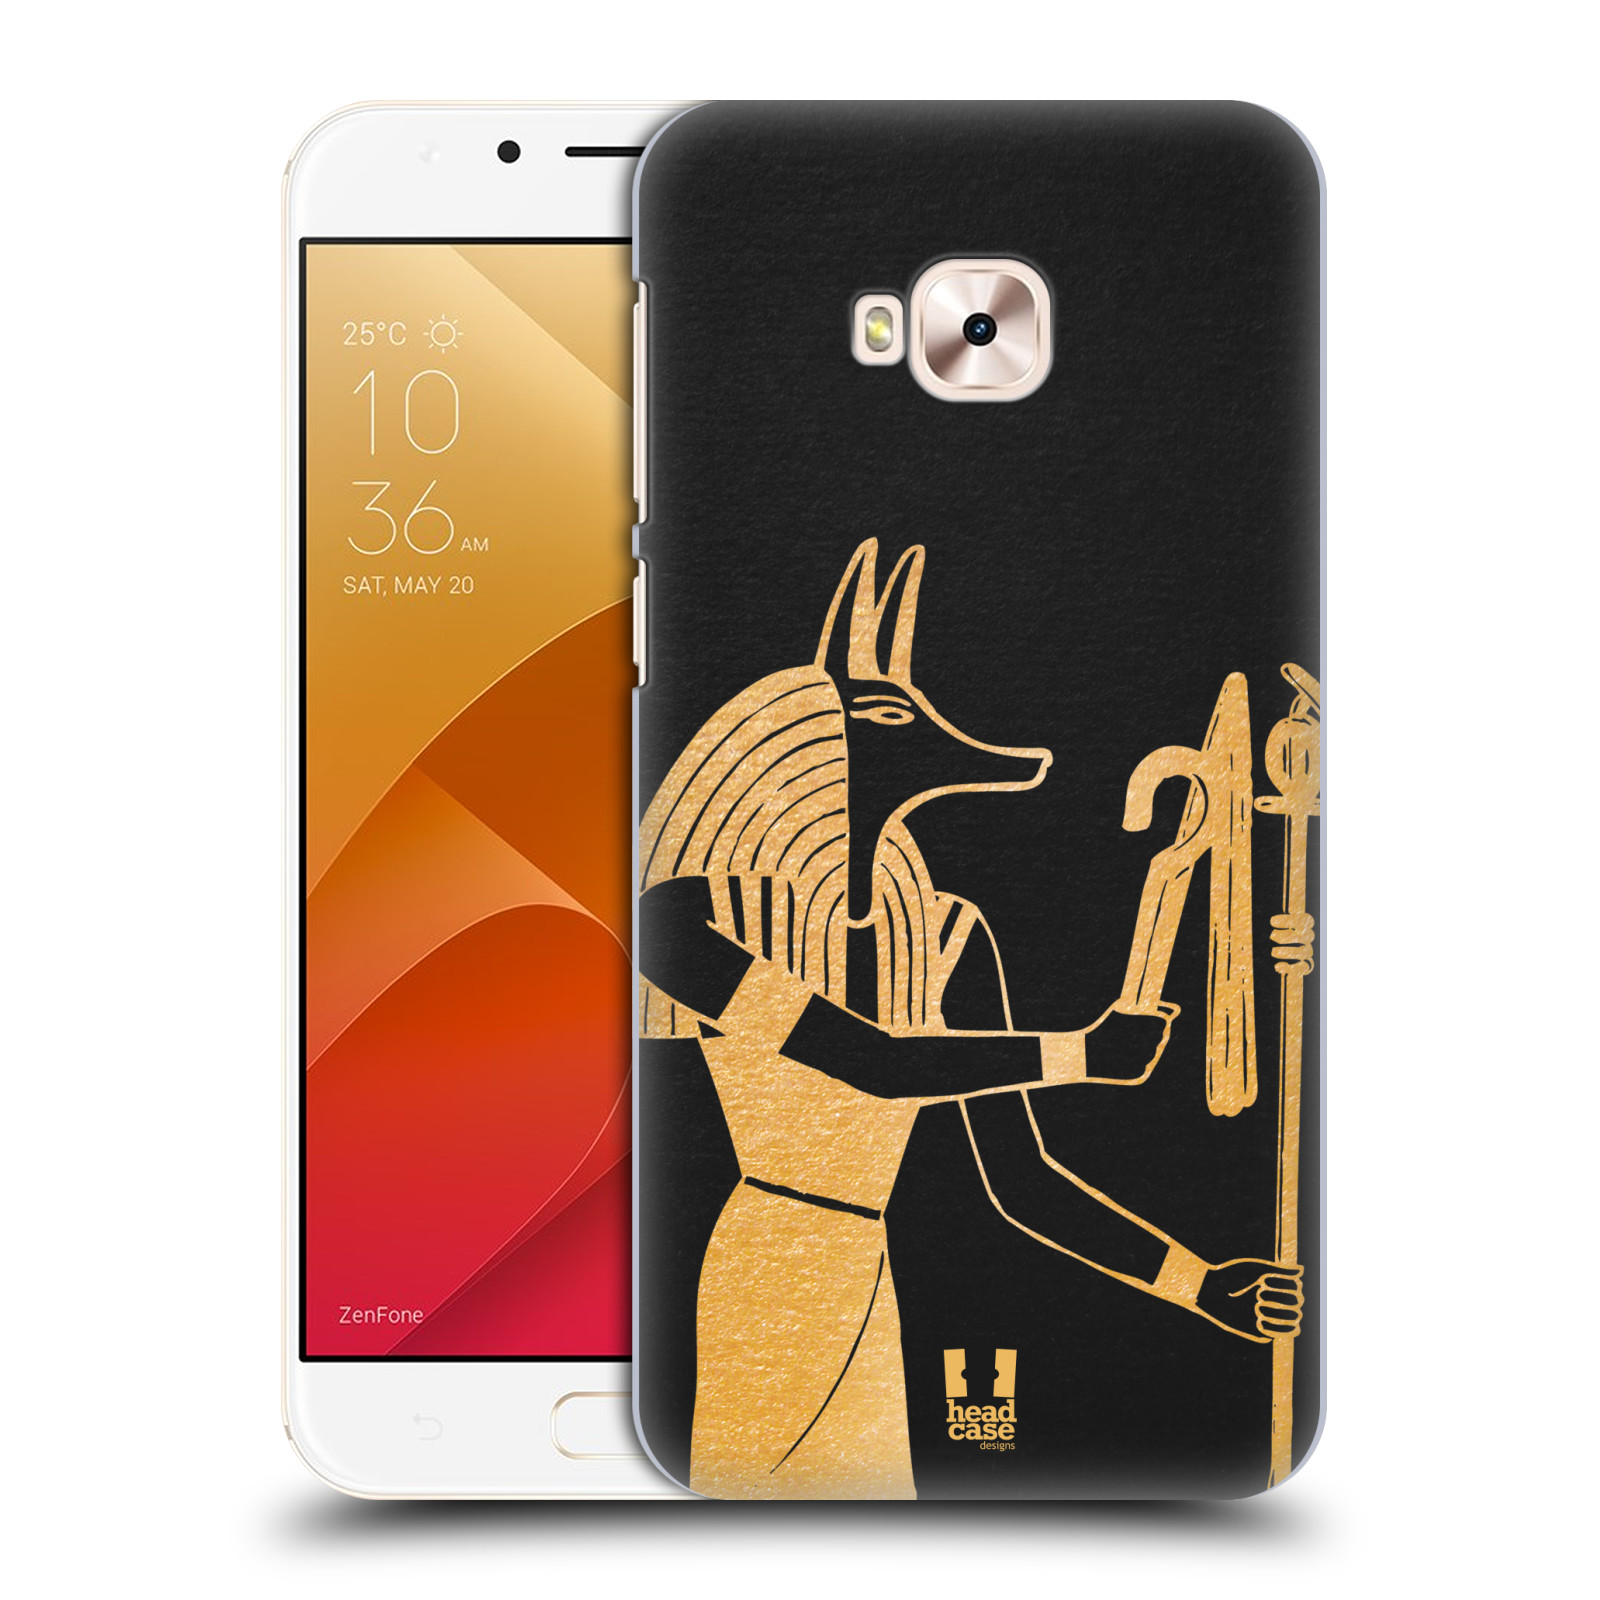 HEAD CASE plastový obal na mobil Asus Zenfone 4 Selfie Pro ZD552KL vzor EGYPT zlatá a černá Anubis